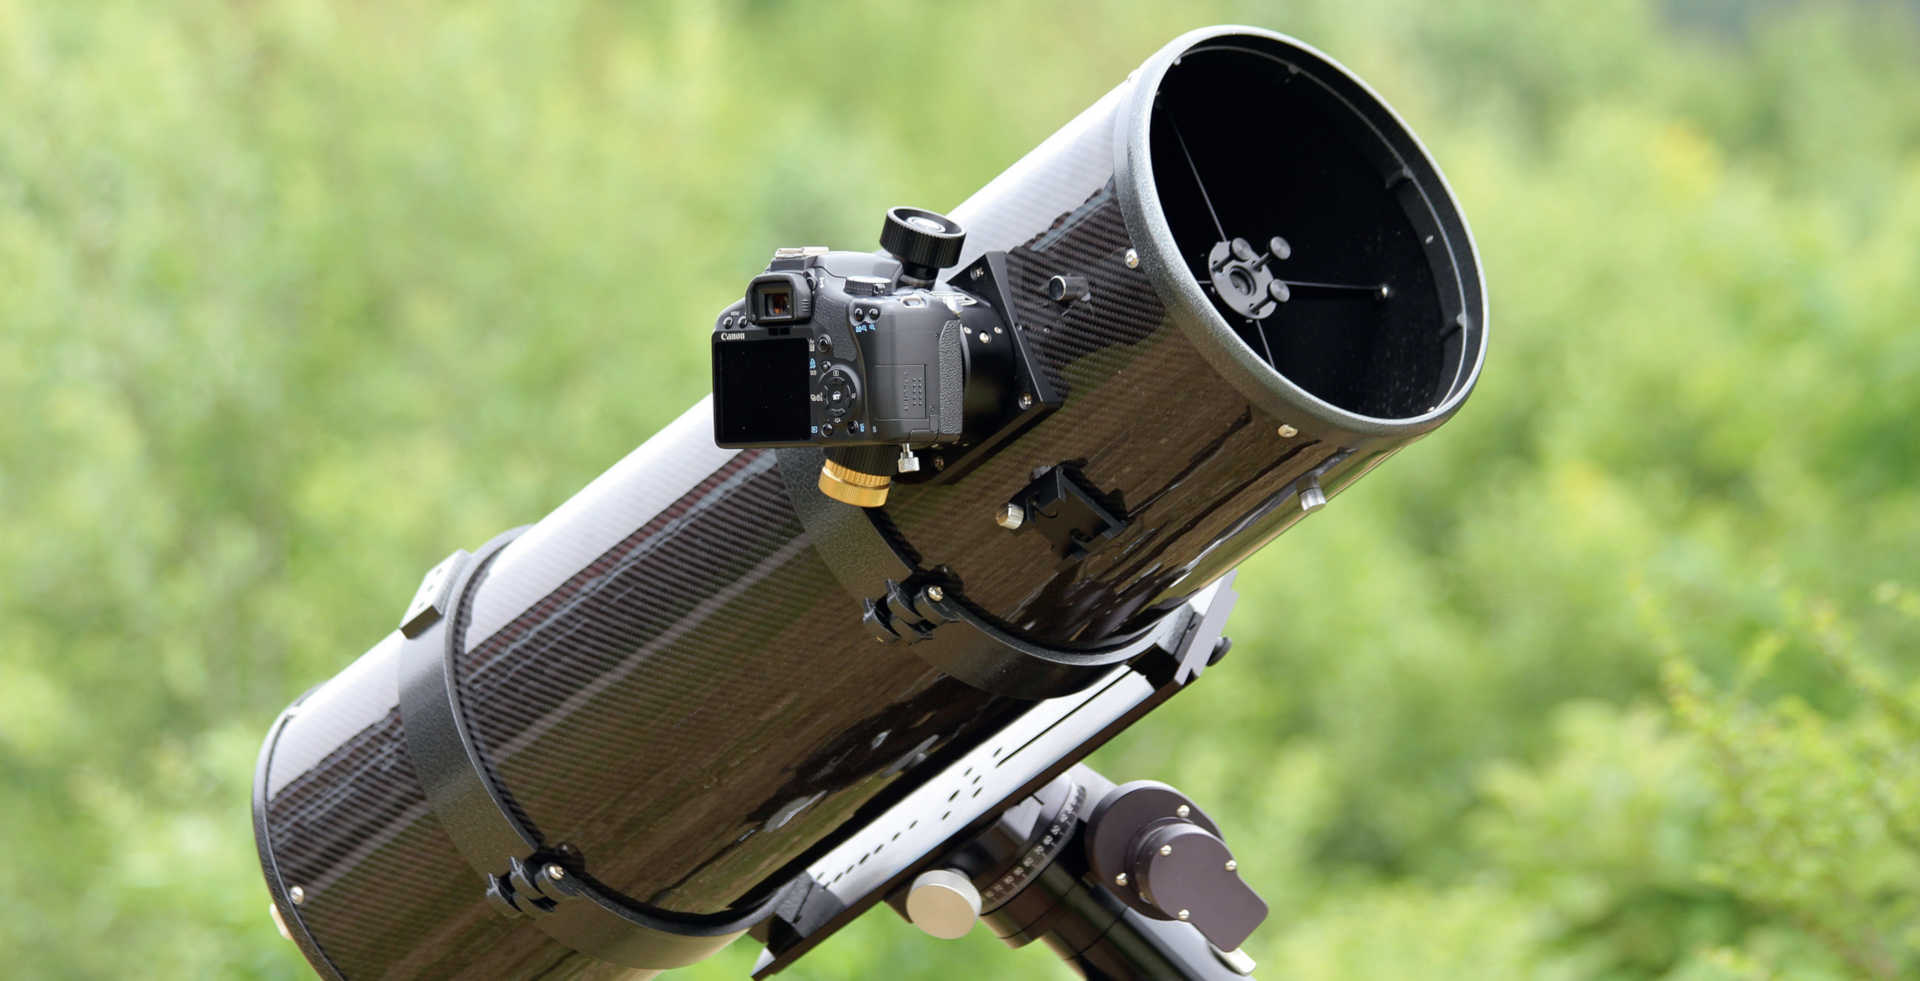 Une bague T2 permet de visser les appareils reflex numériques directement sur le porte-oculaire du télescope. En alternative, une connexion via le coulant de 2 pouces est également possible. Pour pouvoir assurer un suivi fiable de la combinaison télescope/appareil photo pendant le long temps d’exposition, une monture équatoriale est nécessaire. U. Dittler